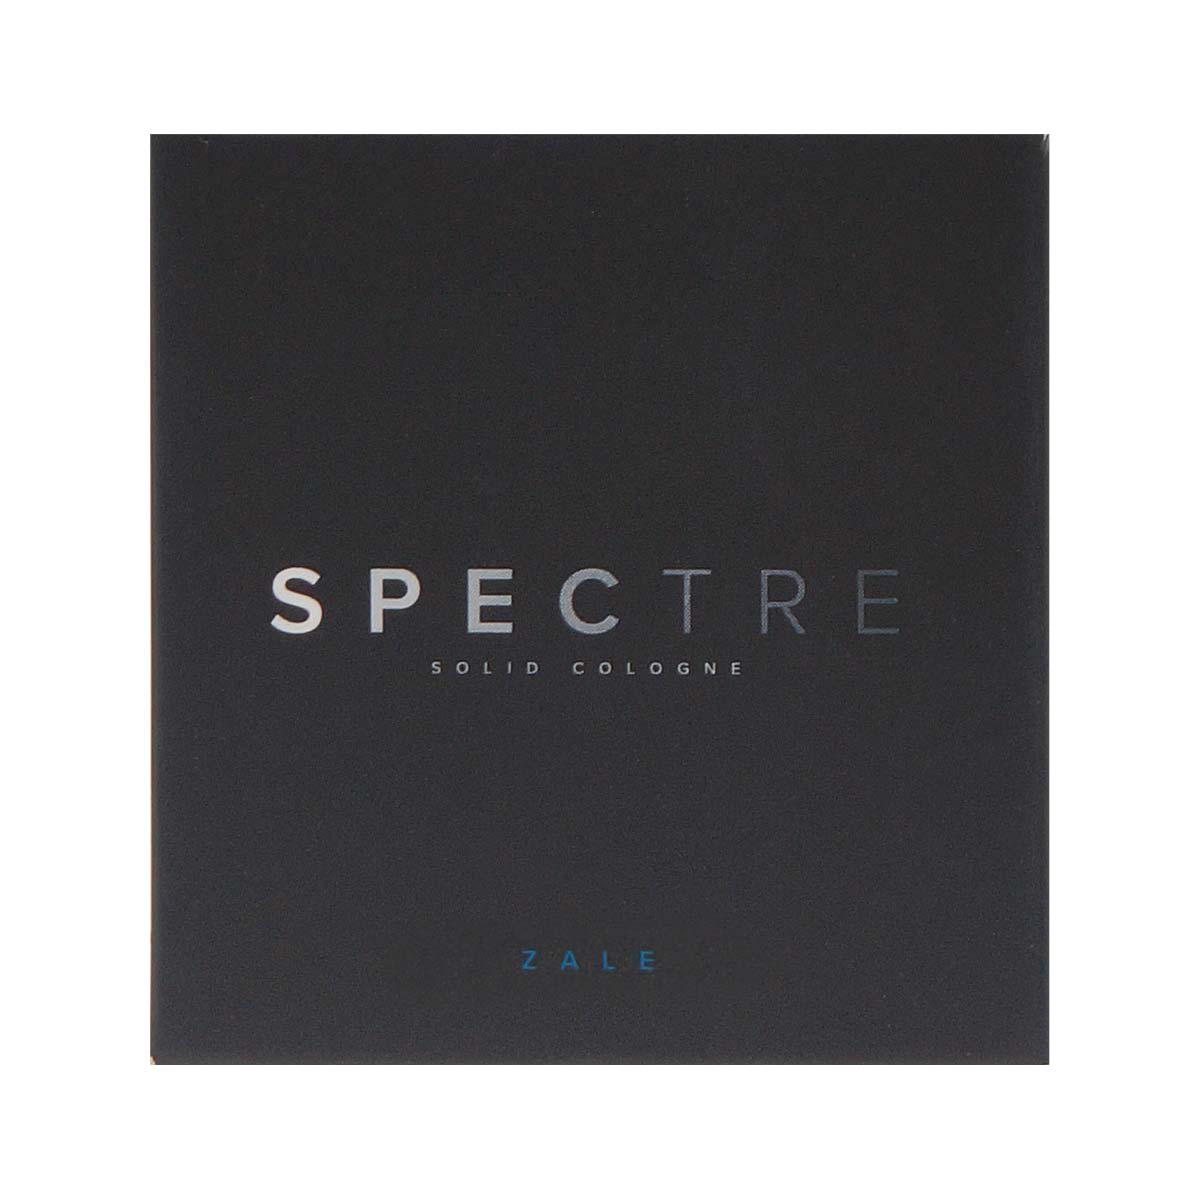 Spectre ソリッドコロン (練り香水) - Zale 25g-p_2